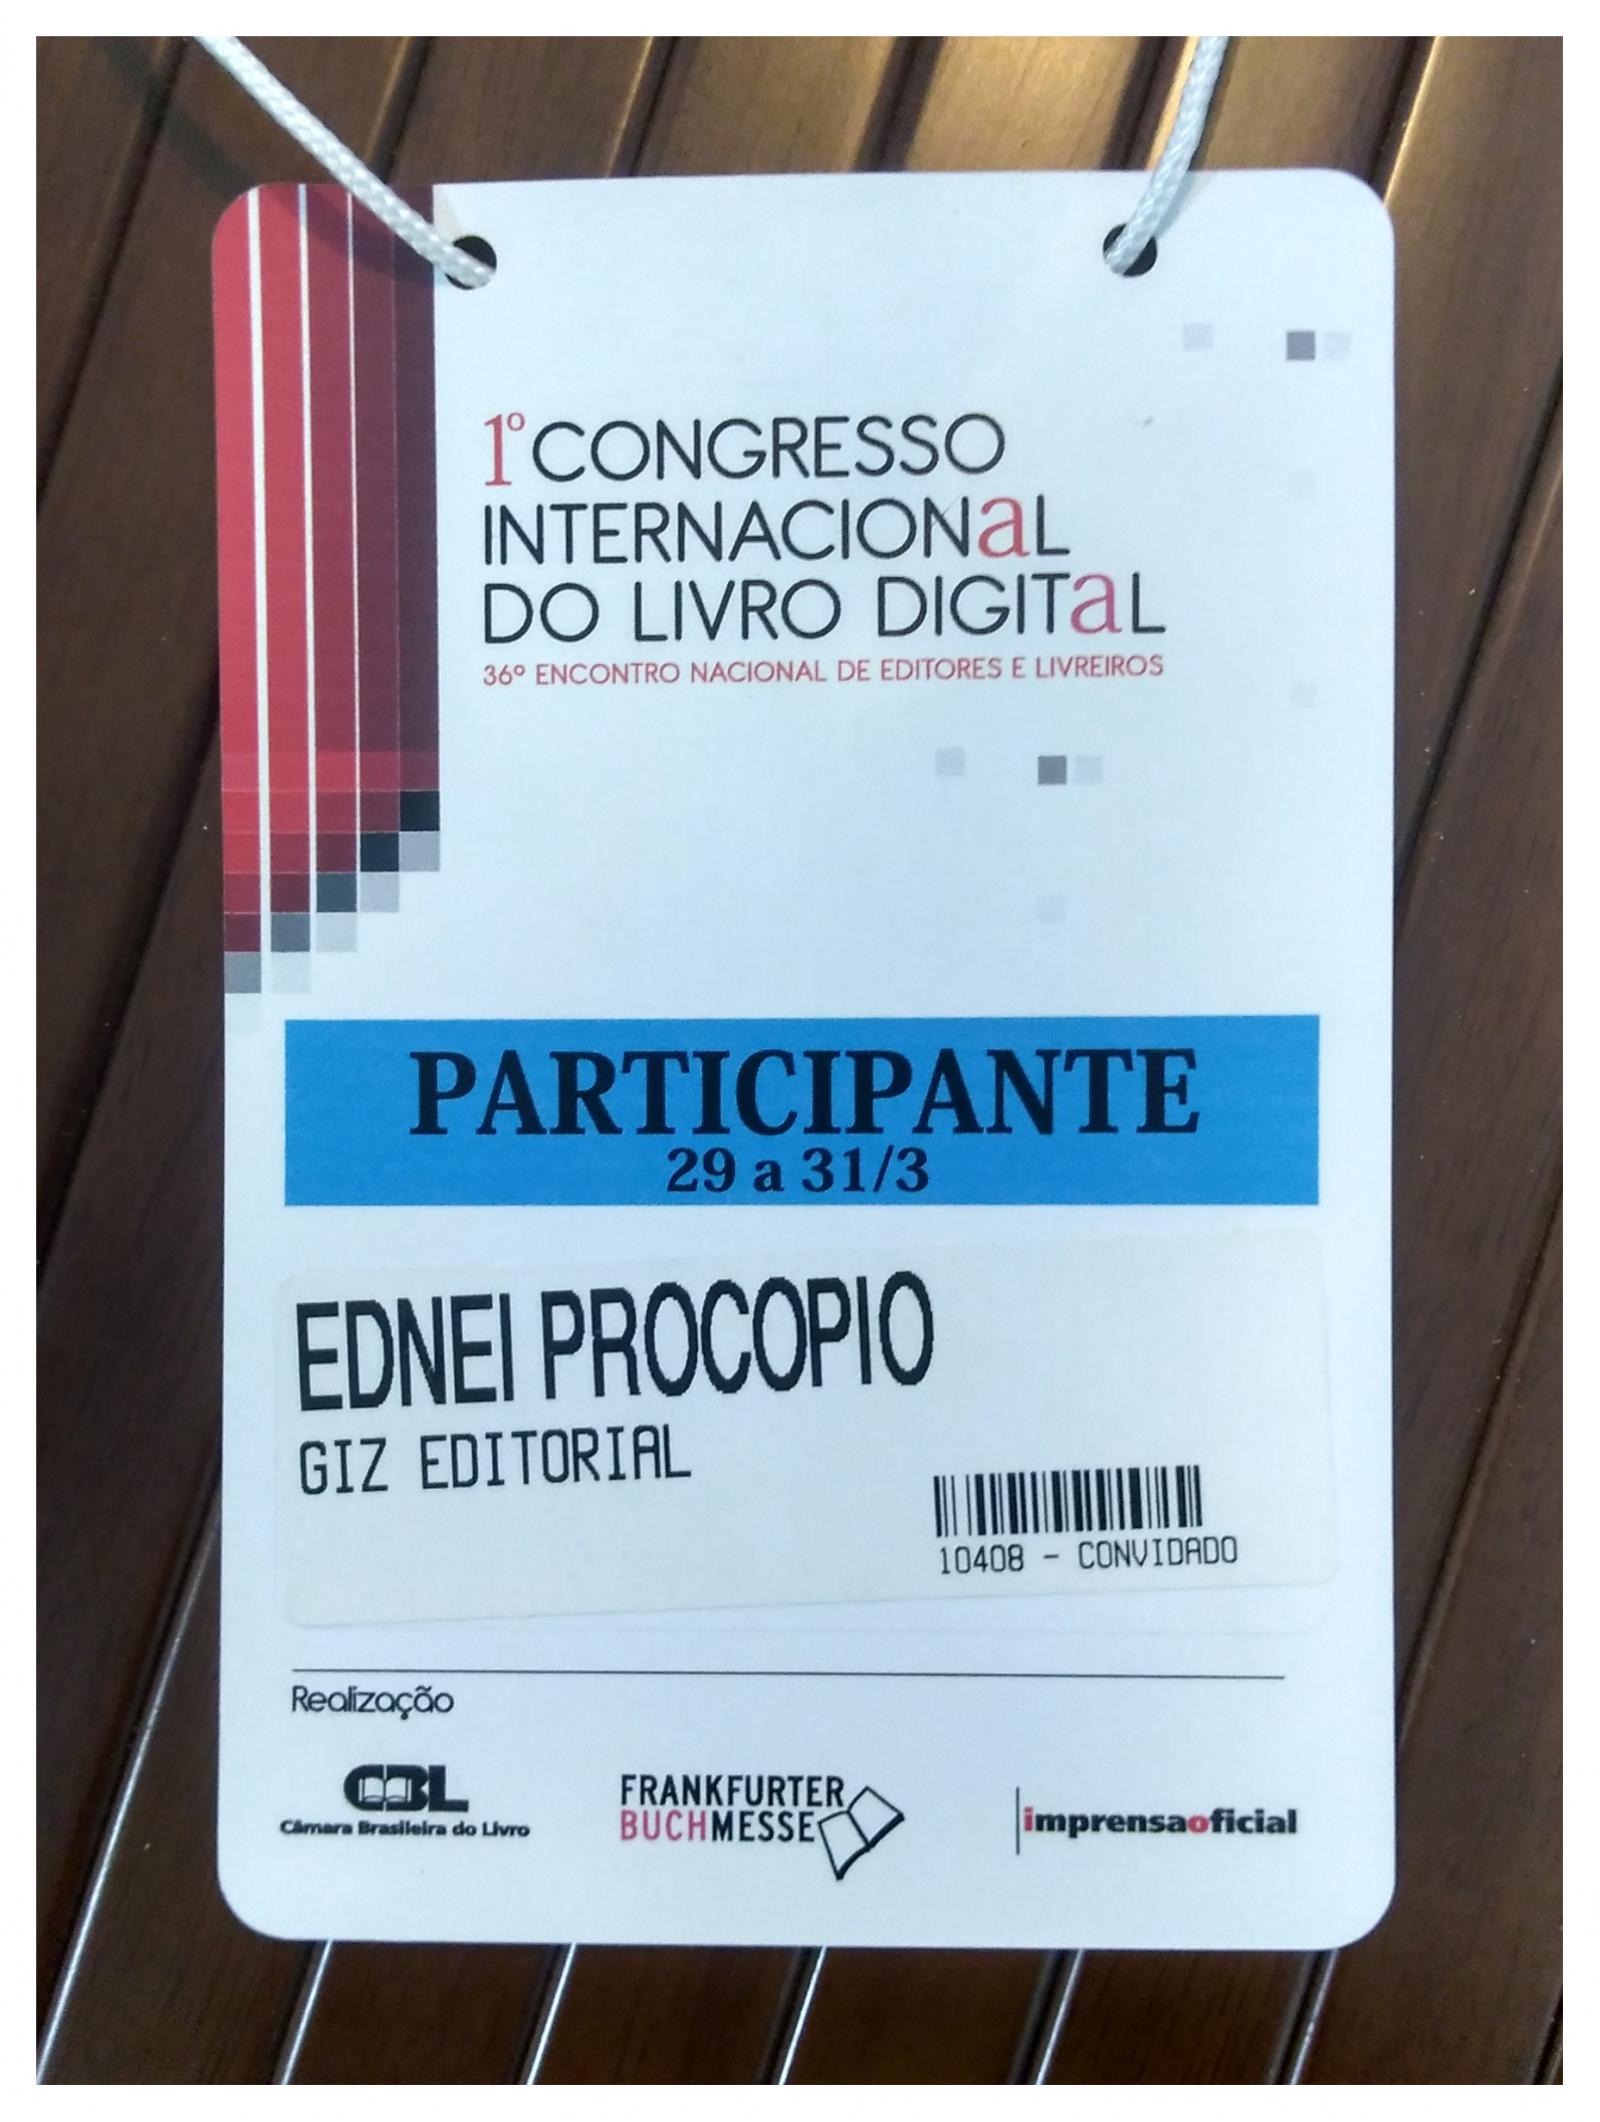 Credencial de participação de Ednei Procópio no 1° Congresso Internacional CBL do Livro Digital, promovido pela Câmara Brasileira do Livro (CBL), em 29 de Março de 2010, quando ainda era editor fundador do selo Giz Editorial.